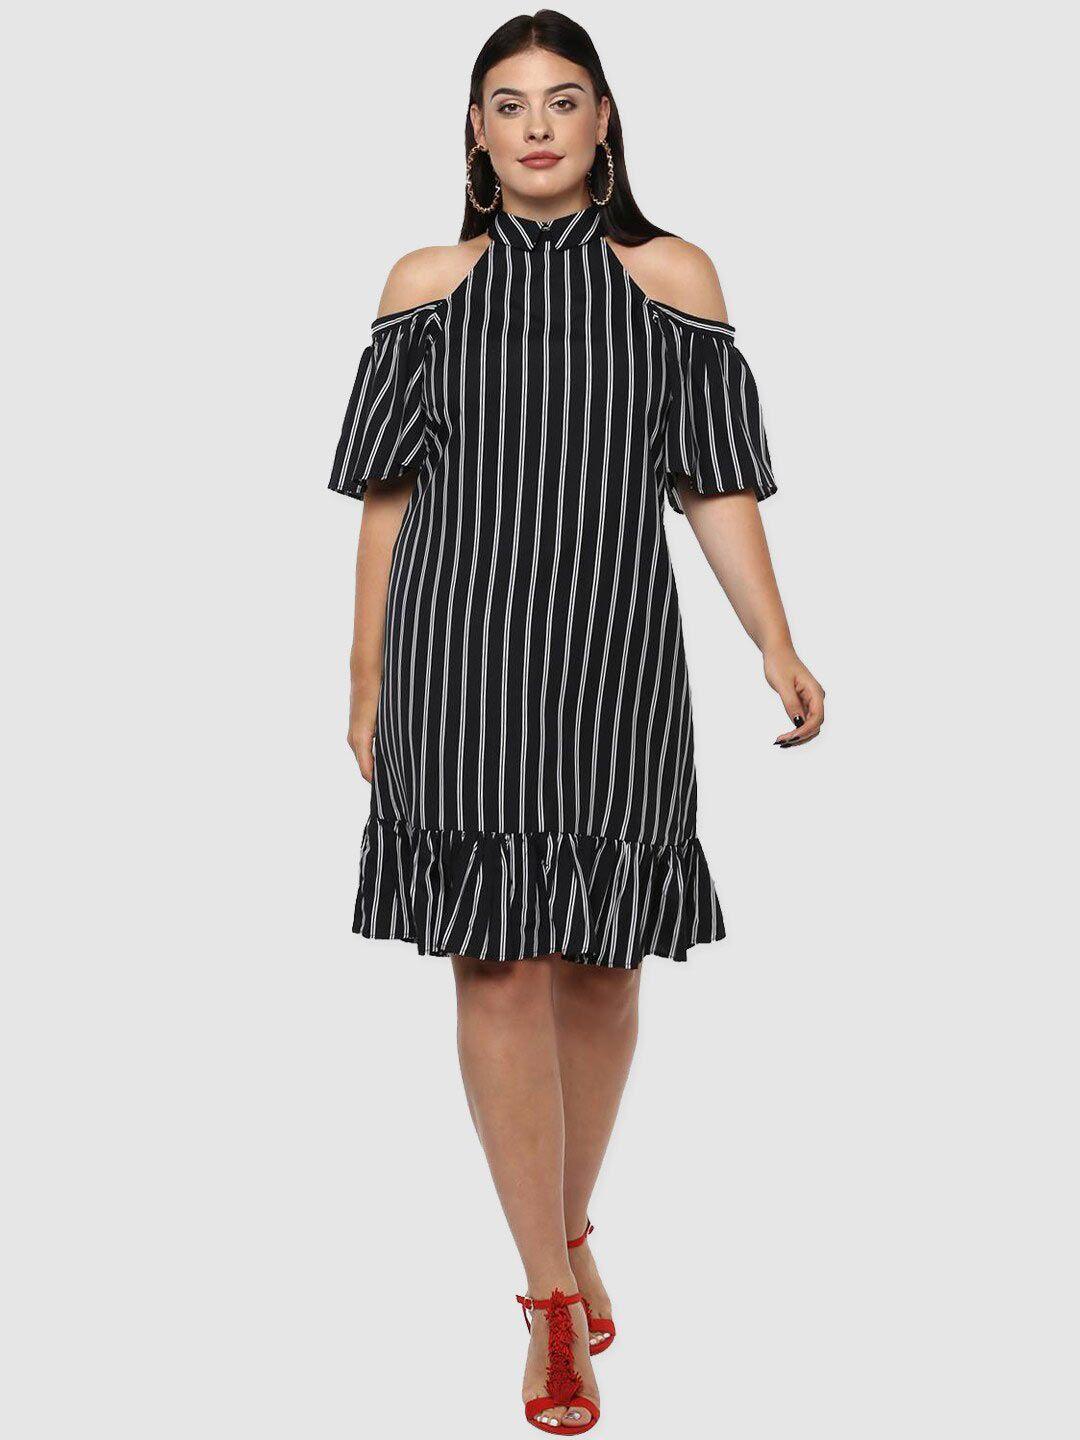 lastinch black striped cold shoulder dress